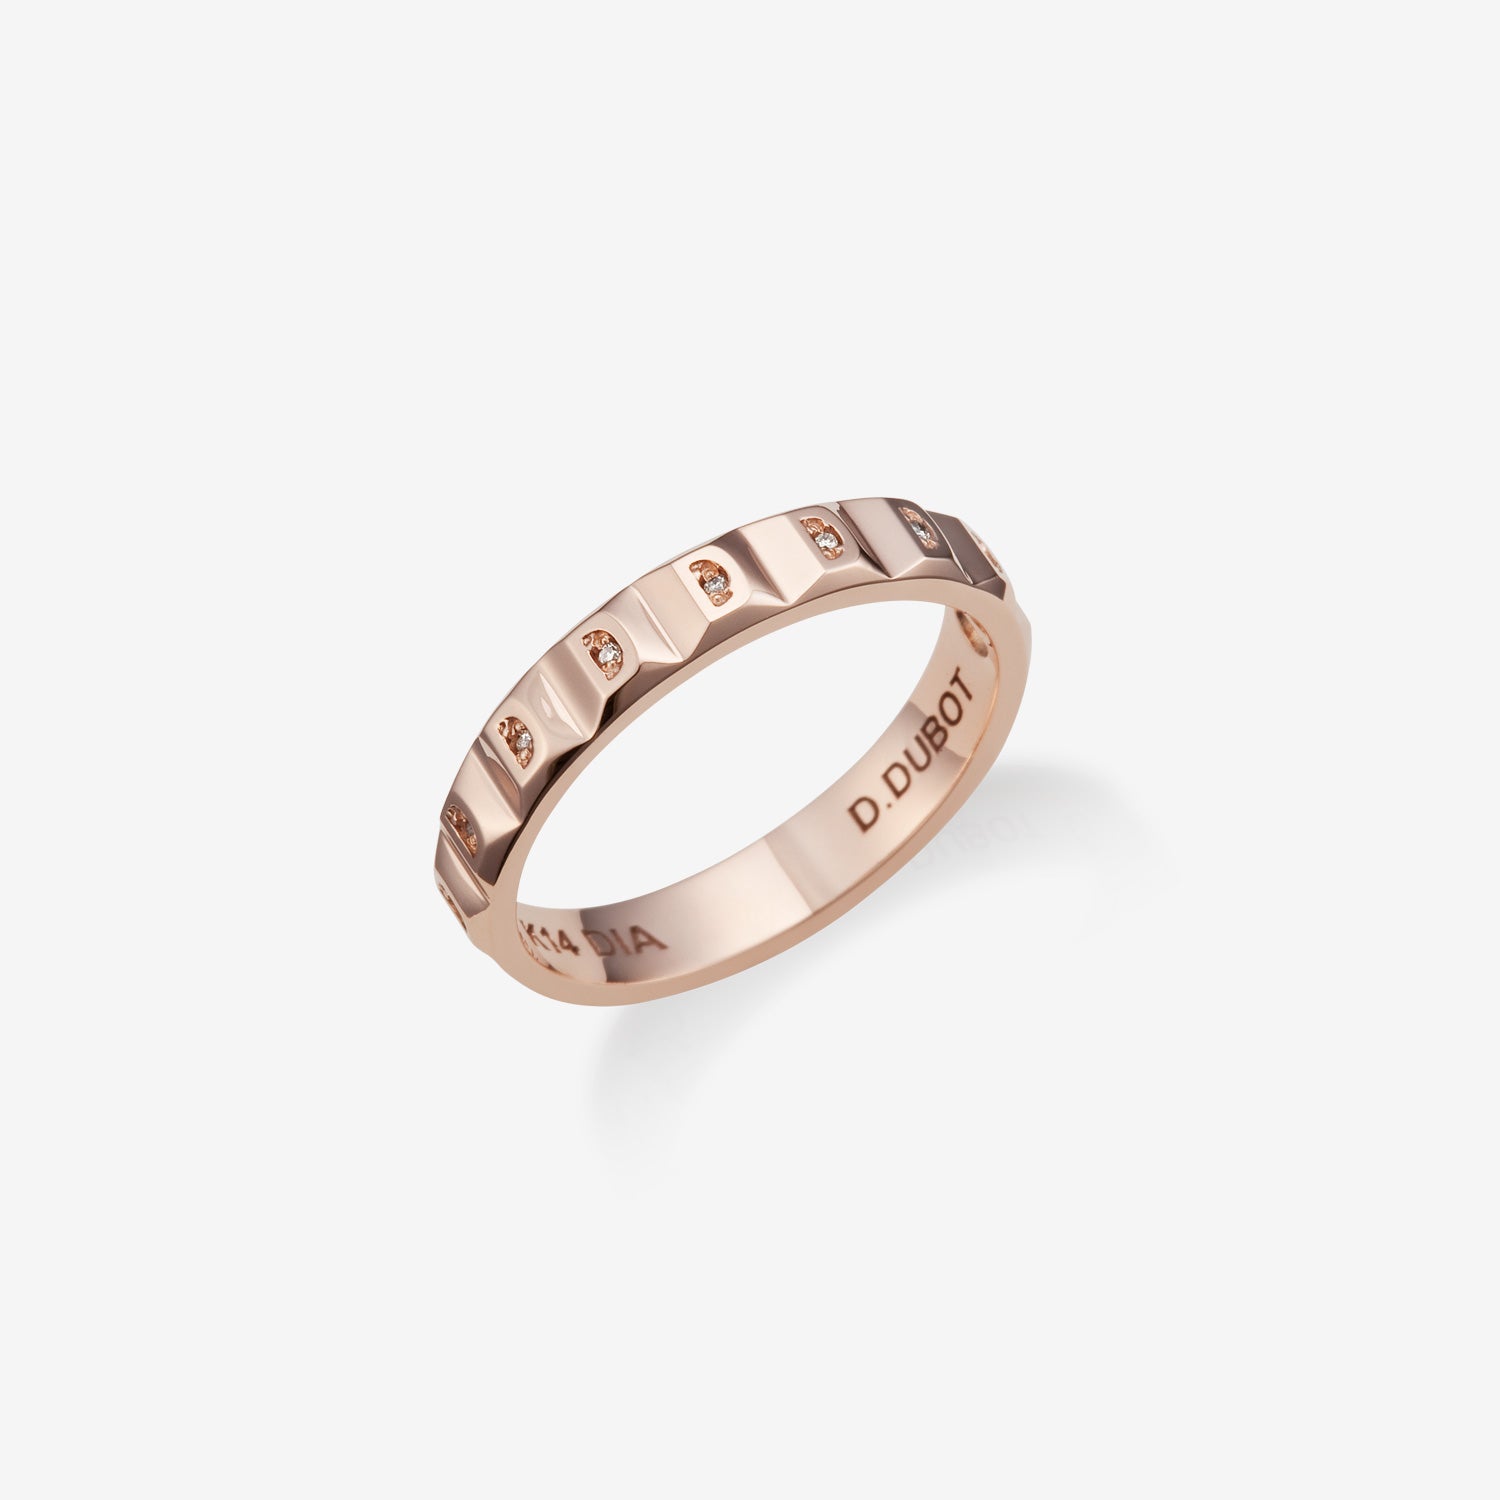 Sensuelle Mariage Gold Ring JDMRRWS044S